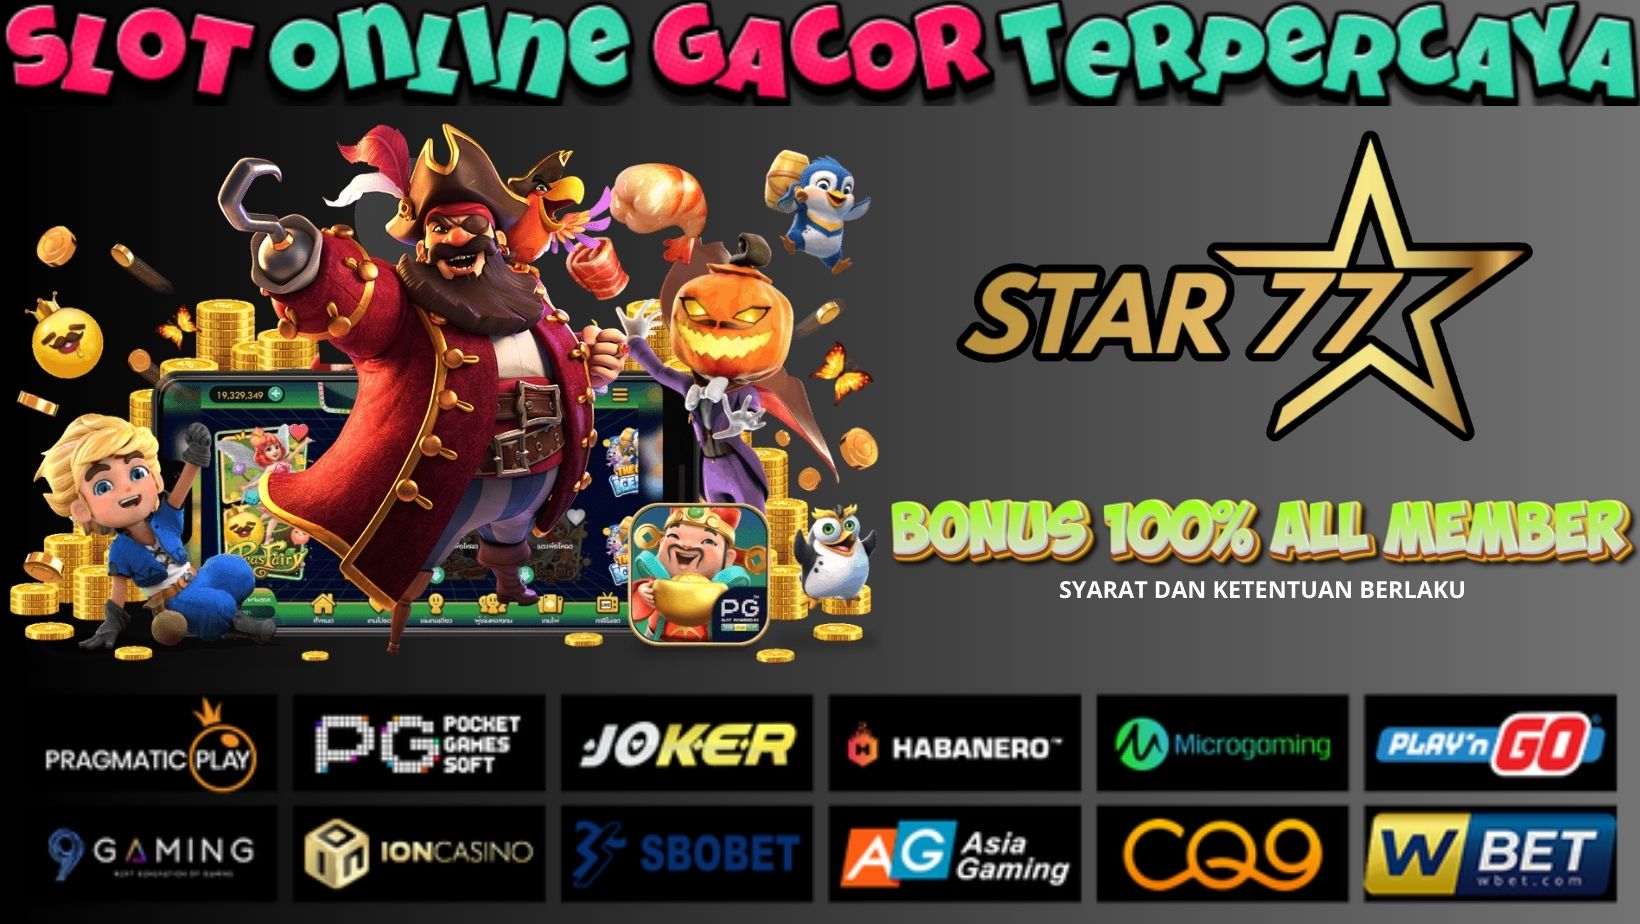 Slot Online Gacor Terpercaya (2)